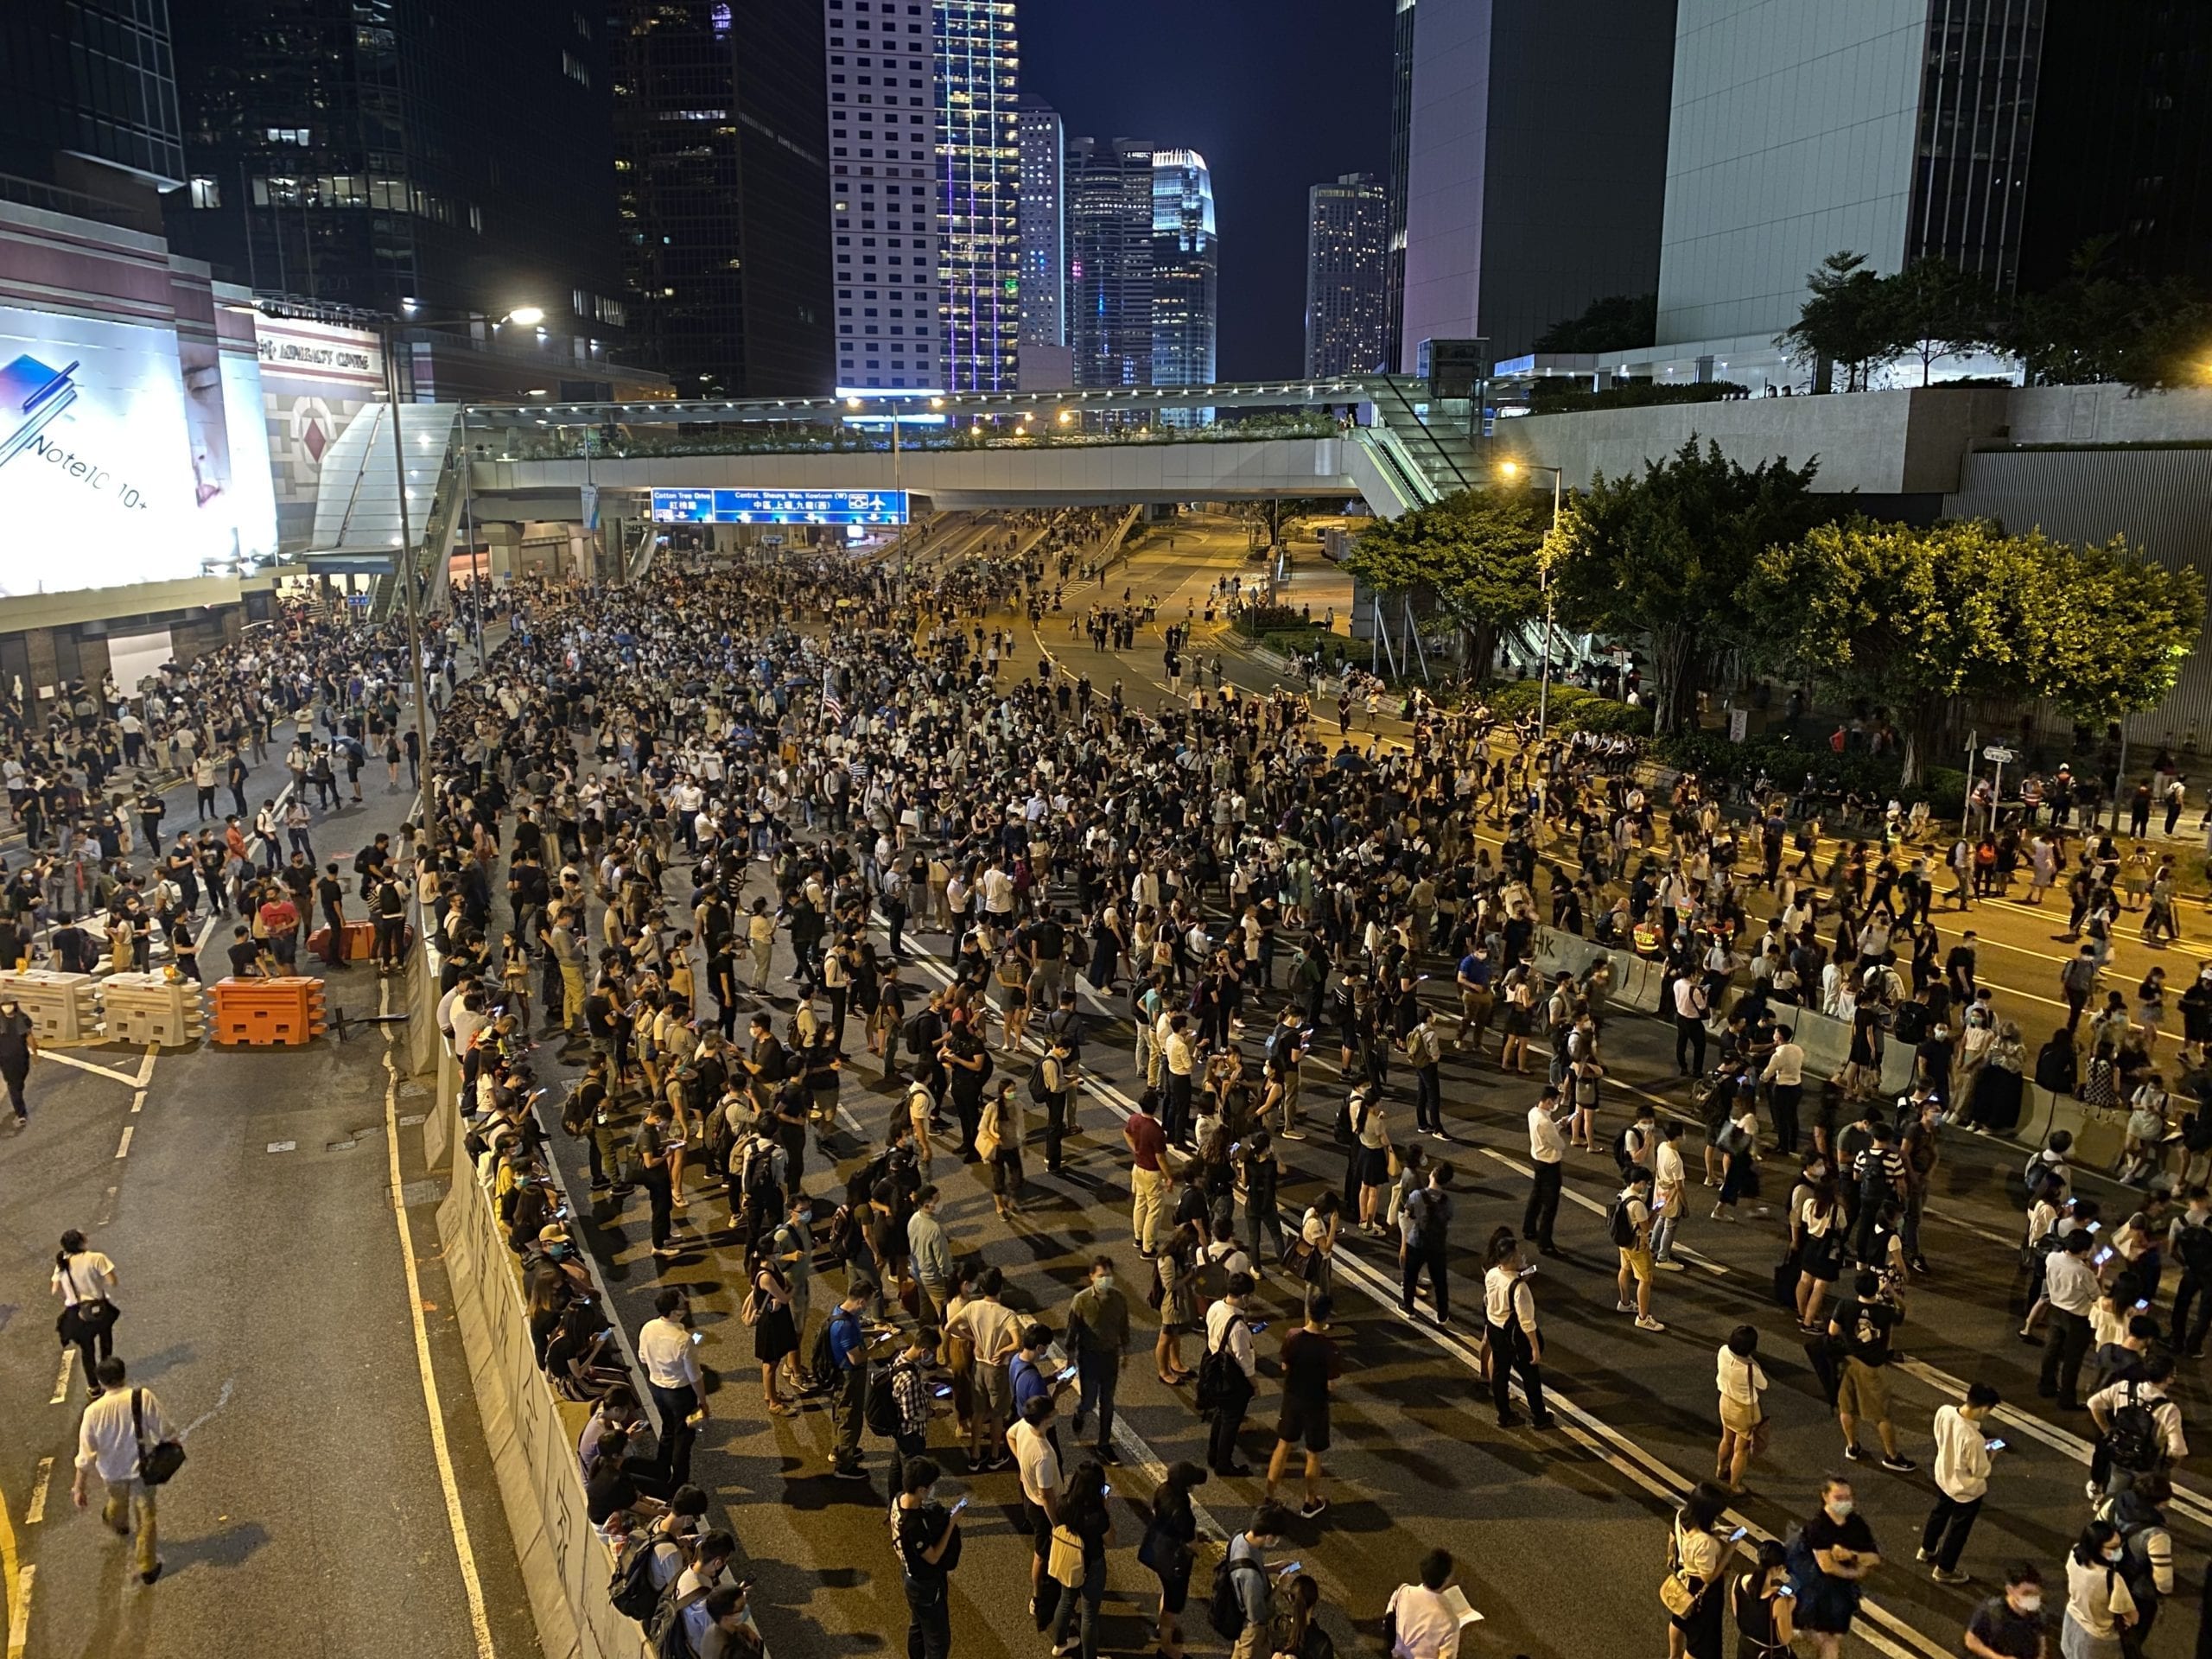 2019-10-04_Protests_in_Hong_Kong_41.jpg